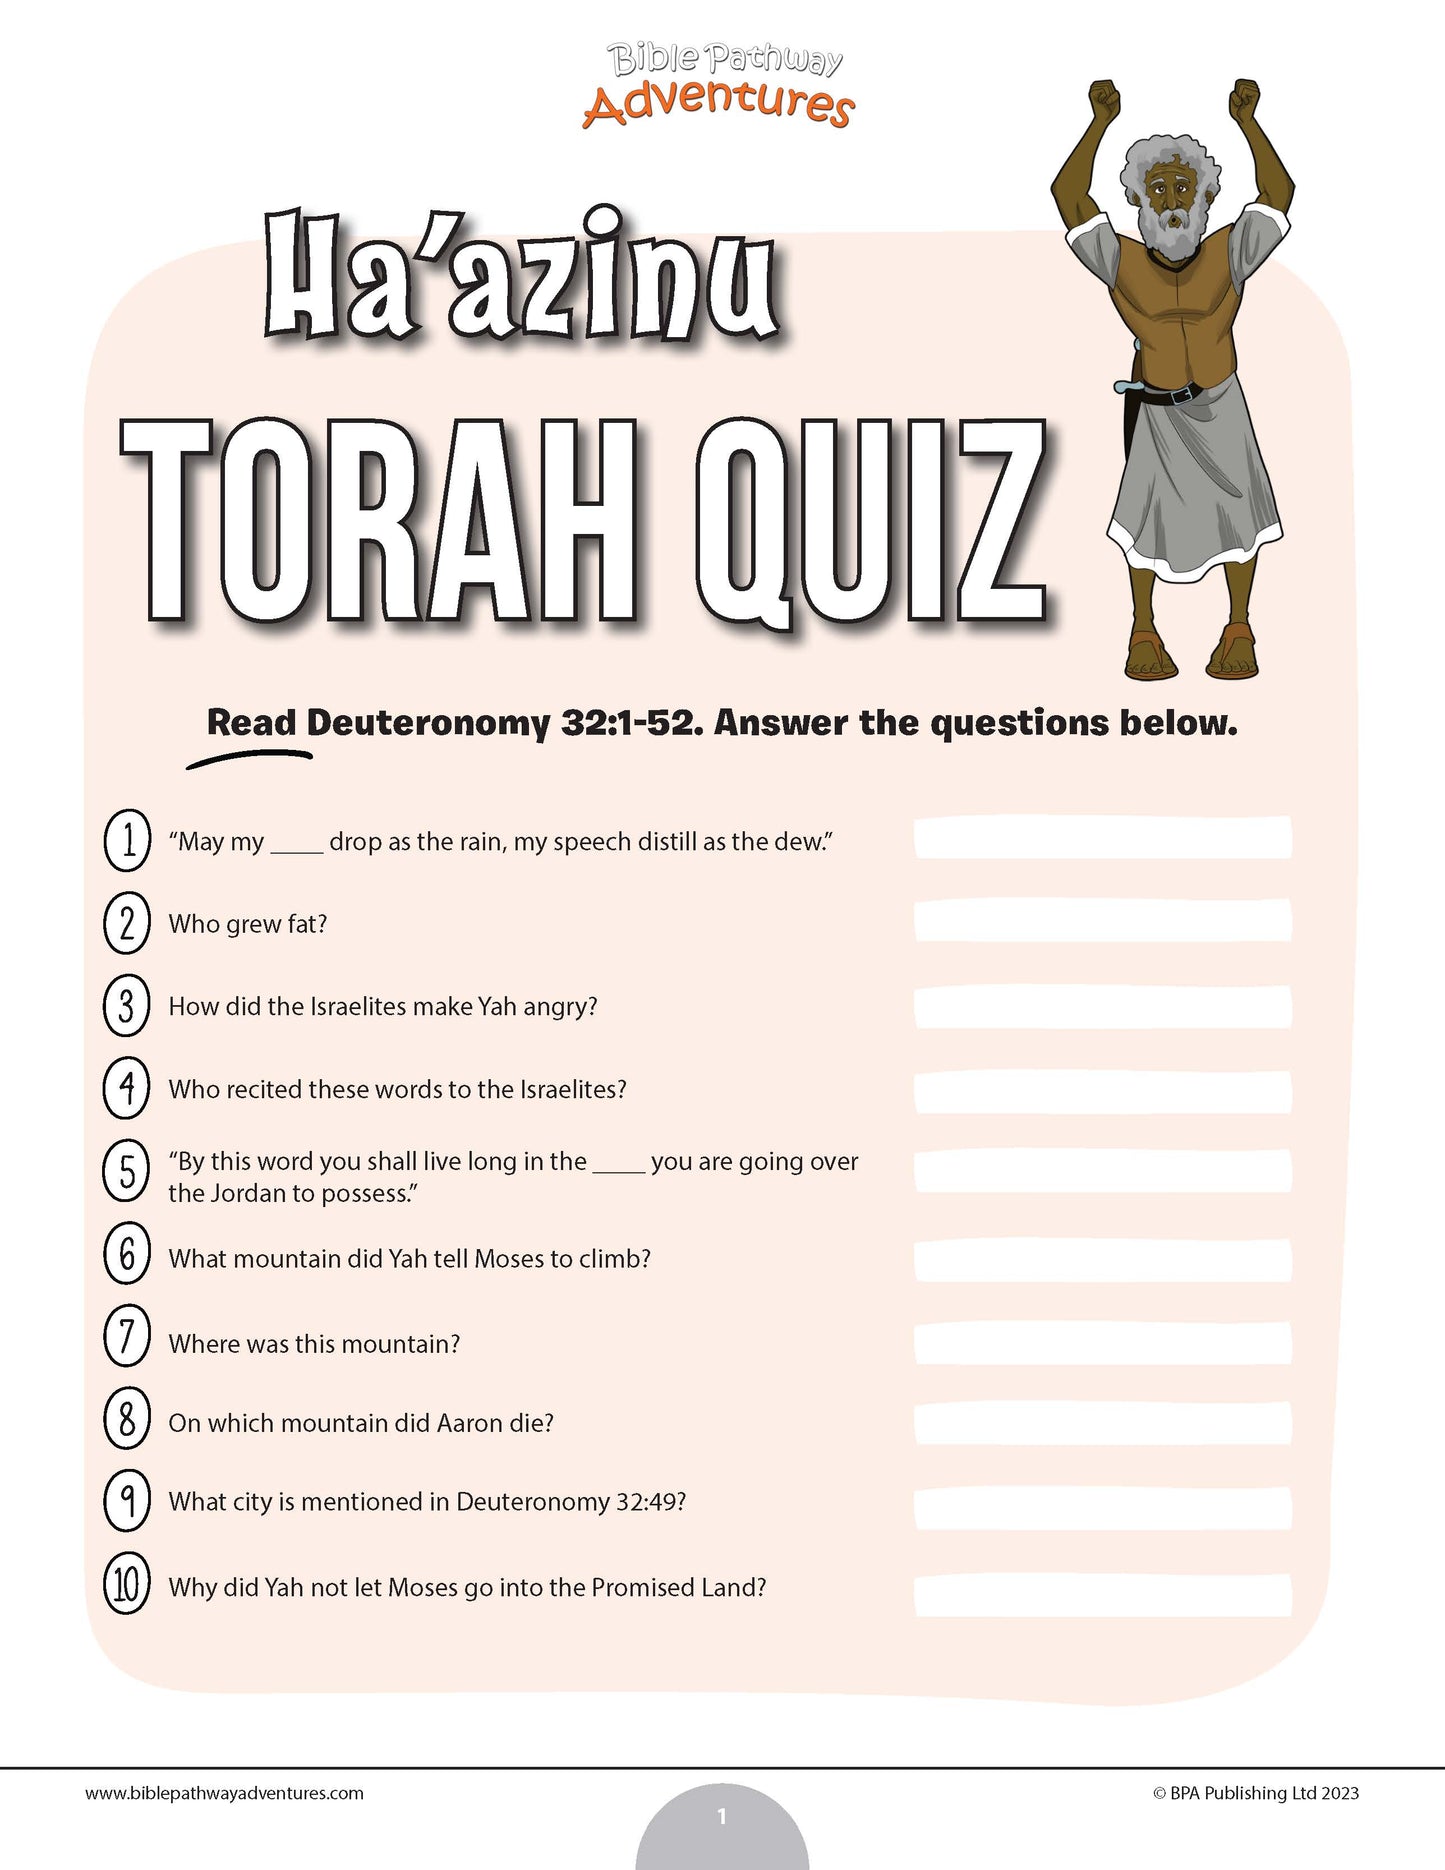 Ha’azinu Torah quiz (PDF)